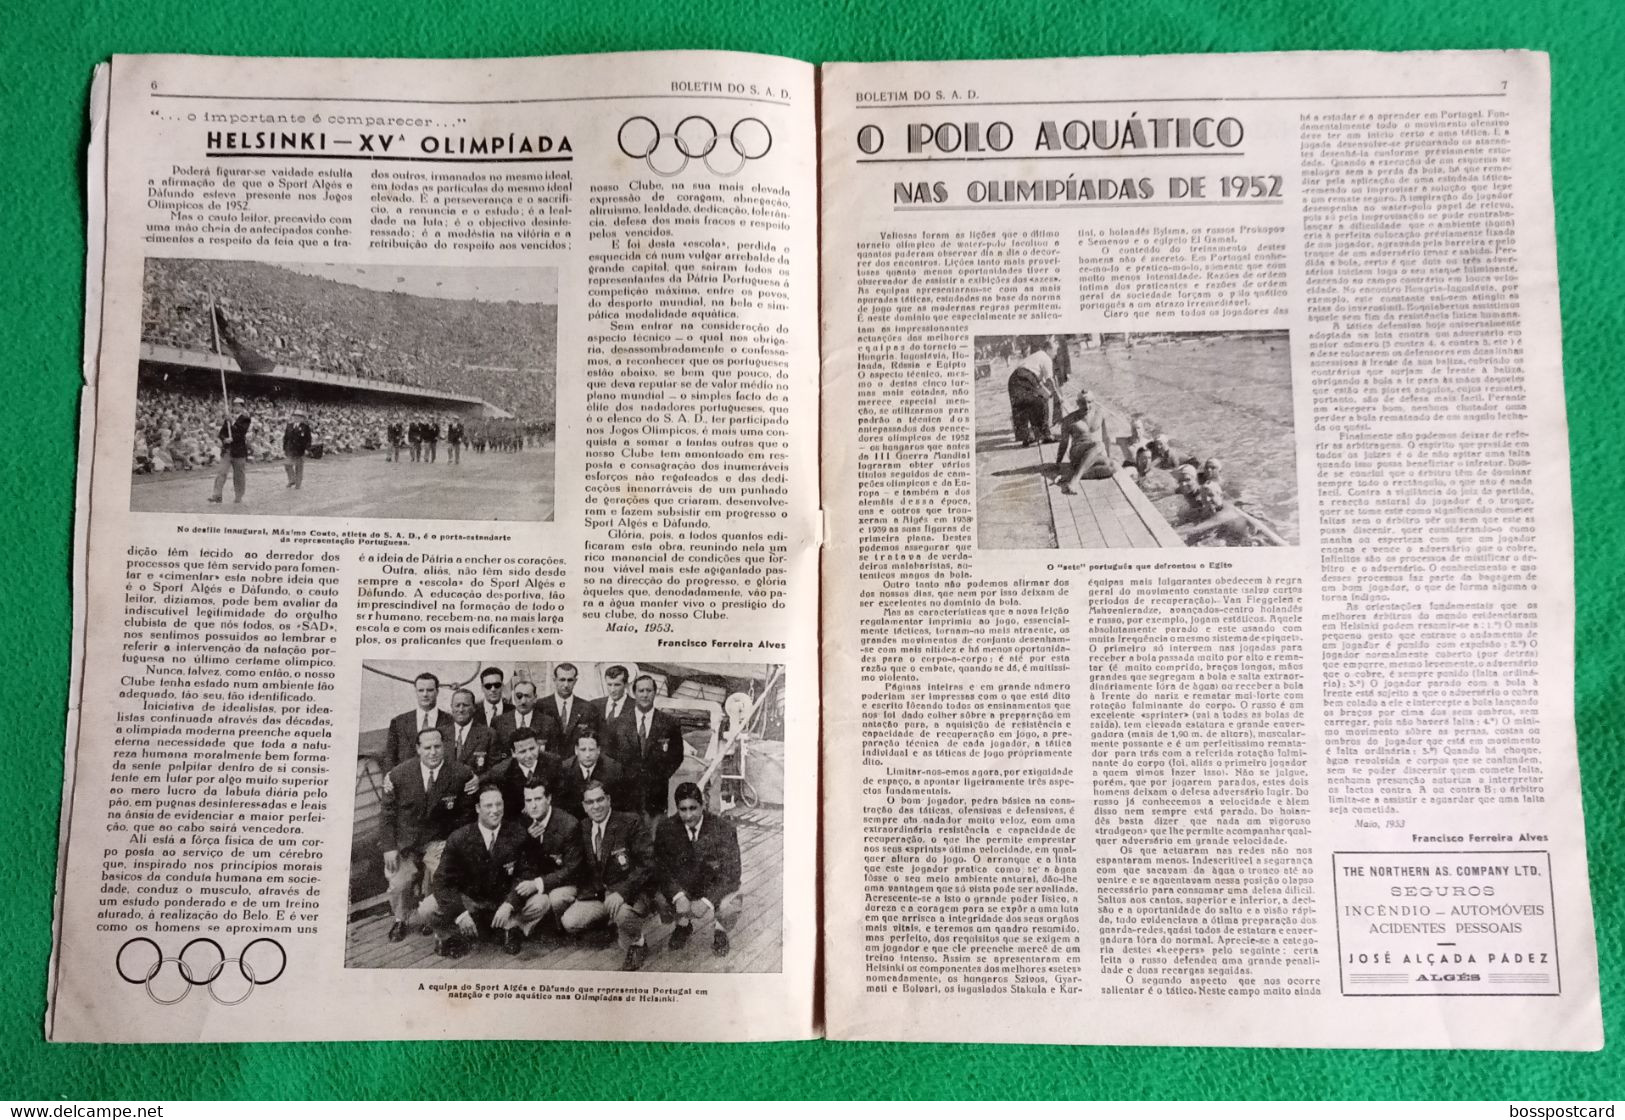 Algés - Sport Algés E Dafundo - Número Comemorativo Do XXXVIII Aniversário, 1953 - Publicidade - Portugal - Deportes